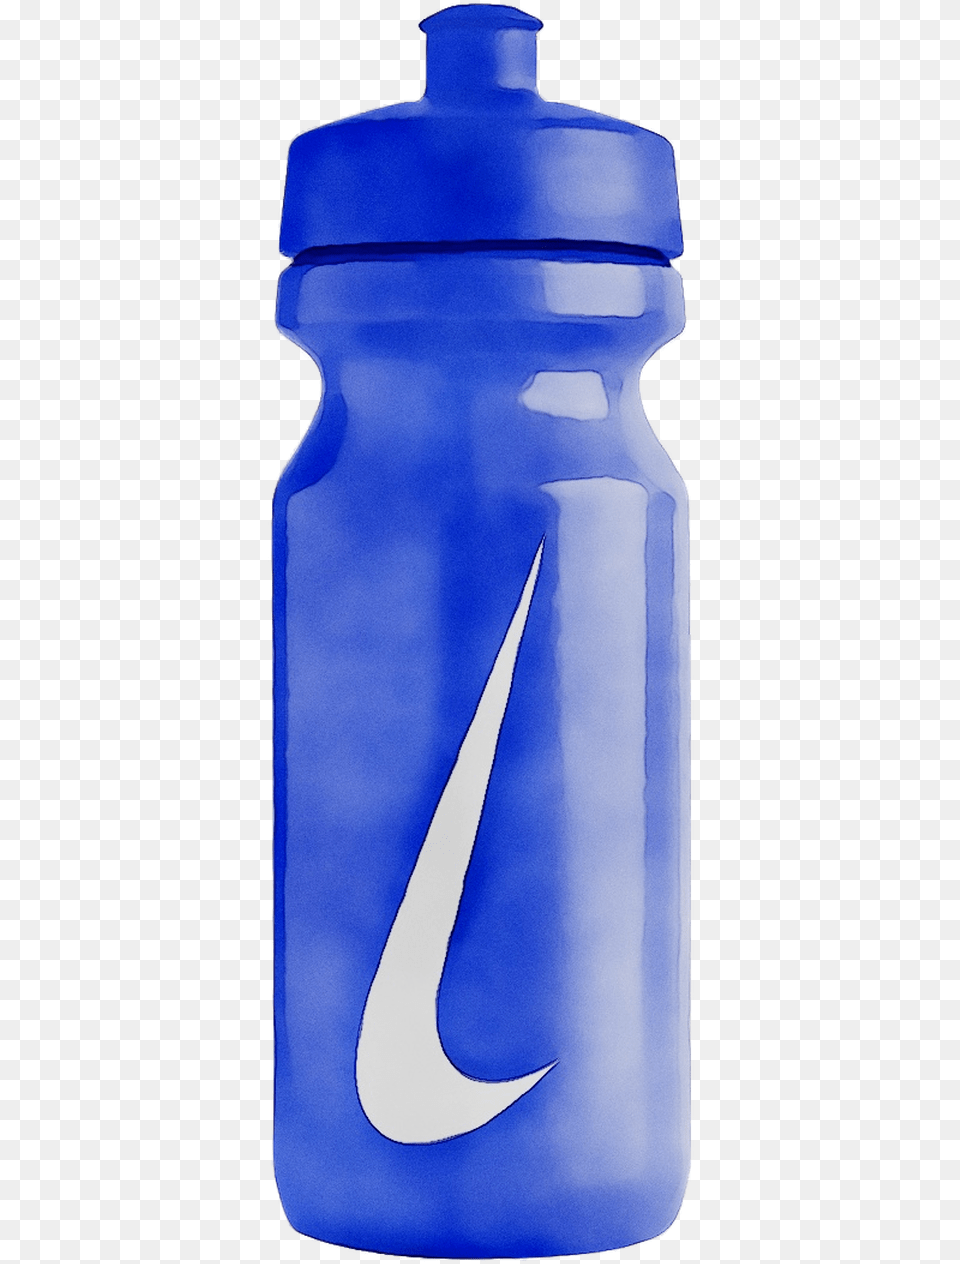 Water Bottles Plastic Bottle Plastic Water Bottle Transparent Background, Water Bottle Png Image